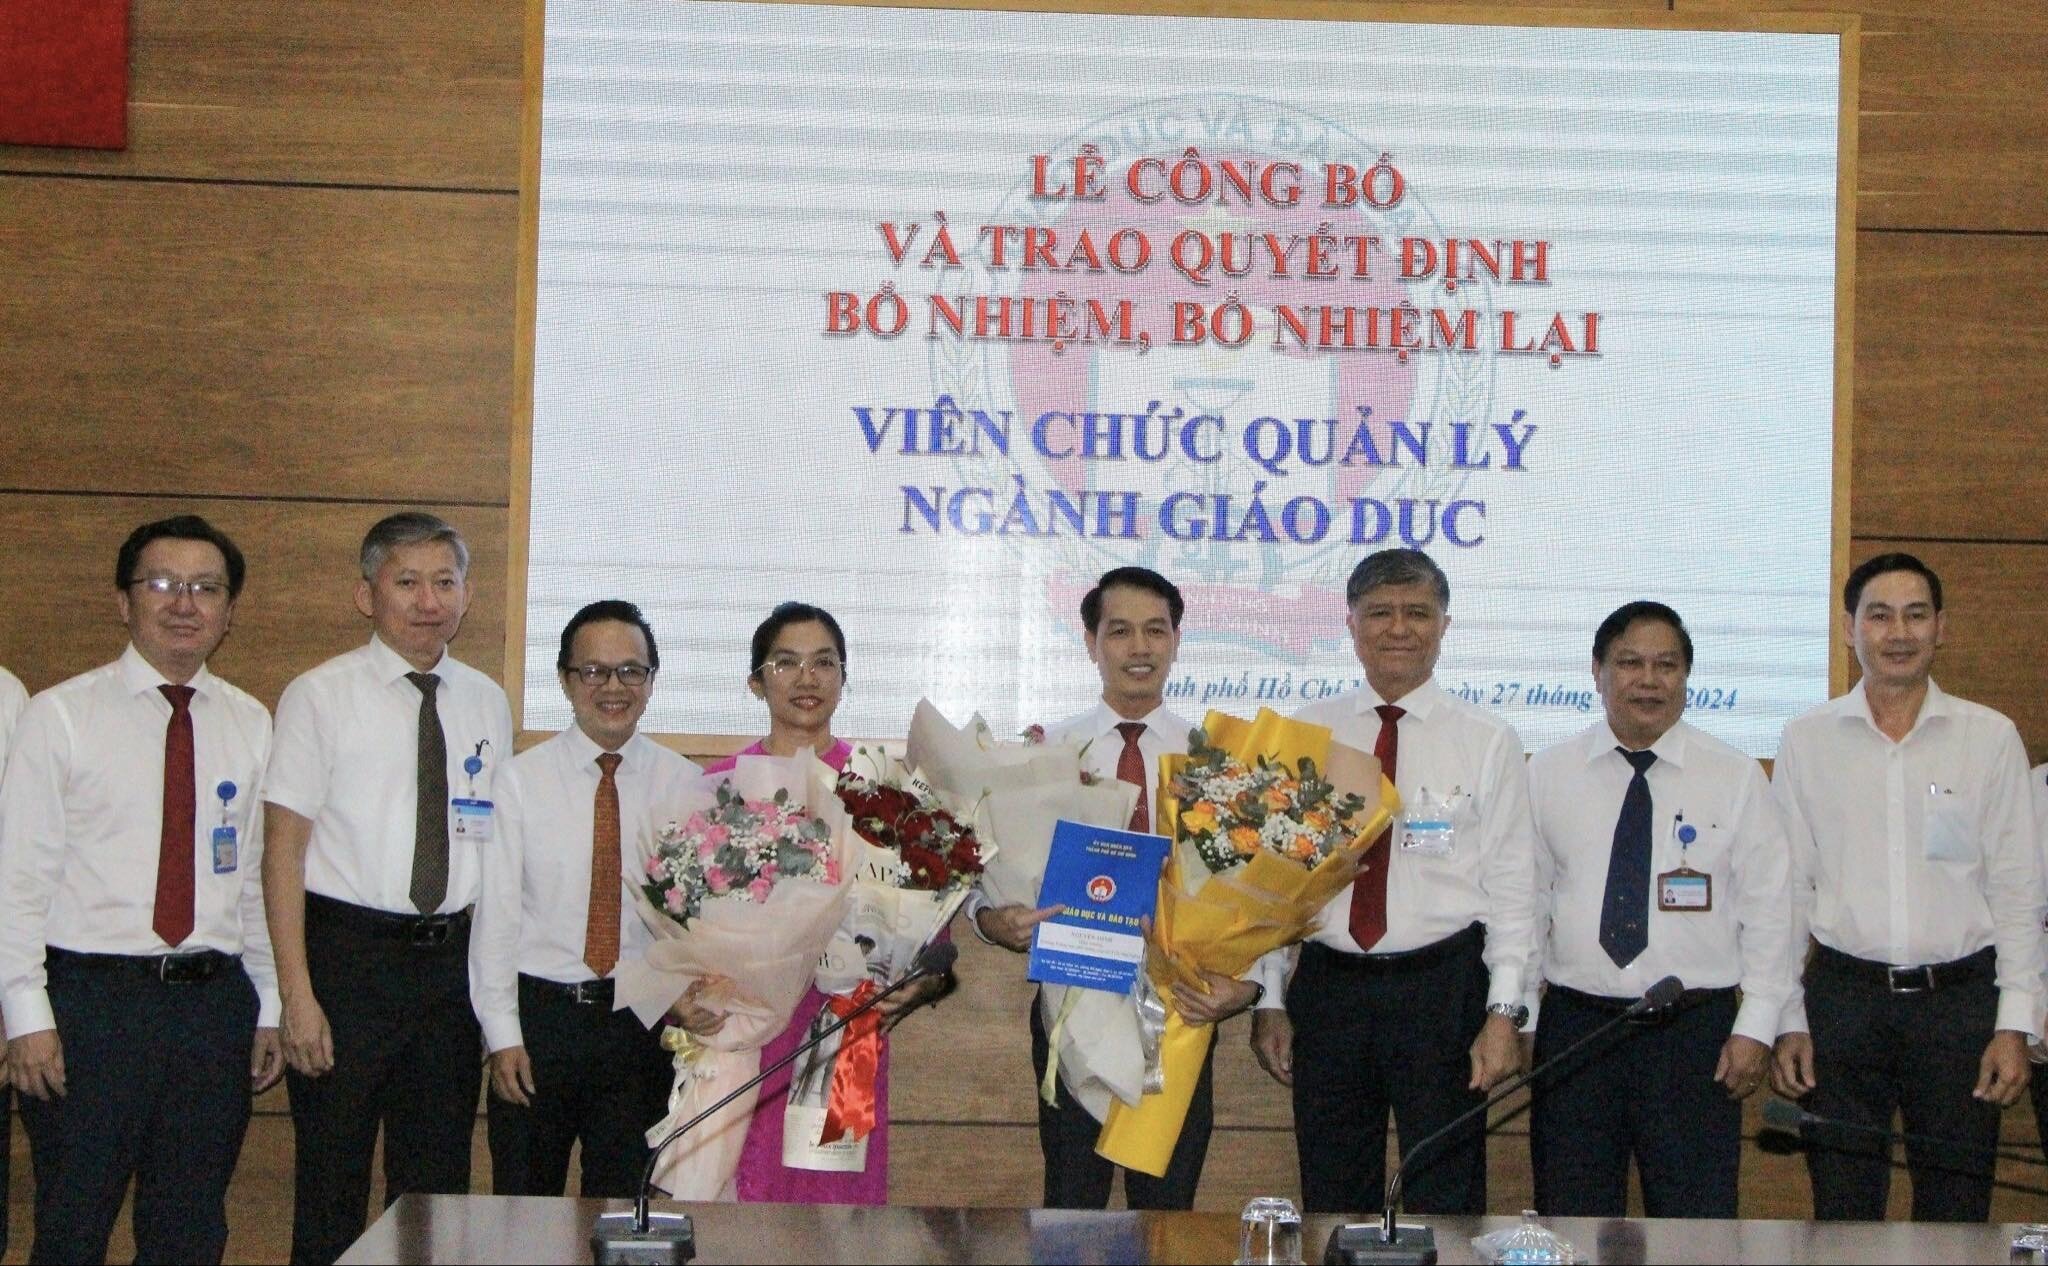 Ông Nguyễn Minh và bà Trần Thị Hồng Thủy nhận quyết định bổ nhiệm từ lãnh đạo Sở GD&ĐT TP.HCM.